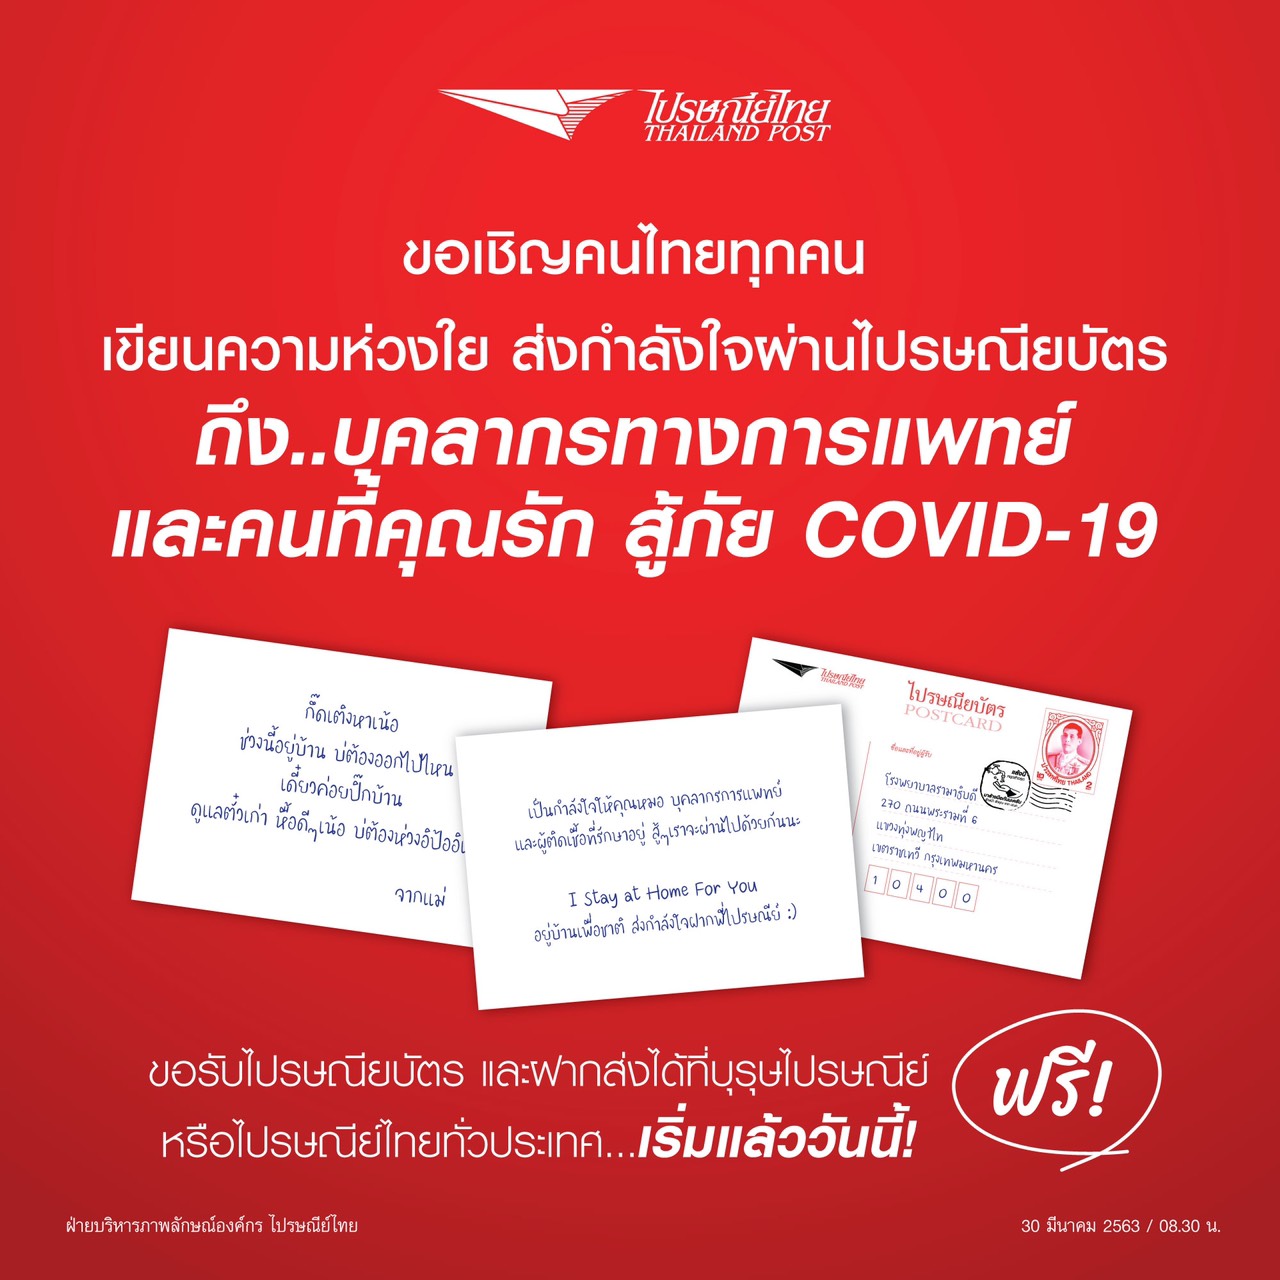 ไปรษณีย์ไทย ชวนคนไทยเขียนไปรษณียบัตร ส่งความห่วงใย สู้ COVID 19 ให้บุคลากรทางการแพทย์ และคนที่คุณรัก ฟรี!